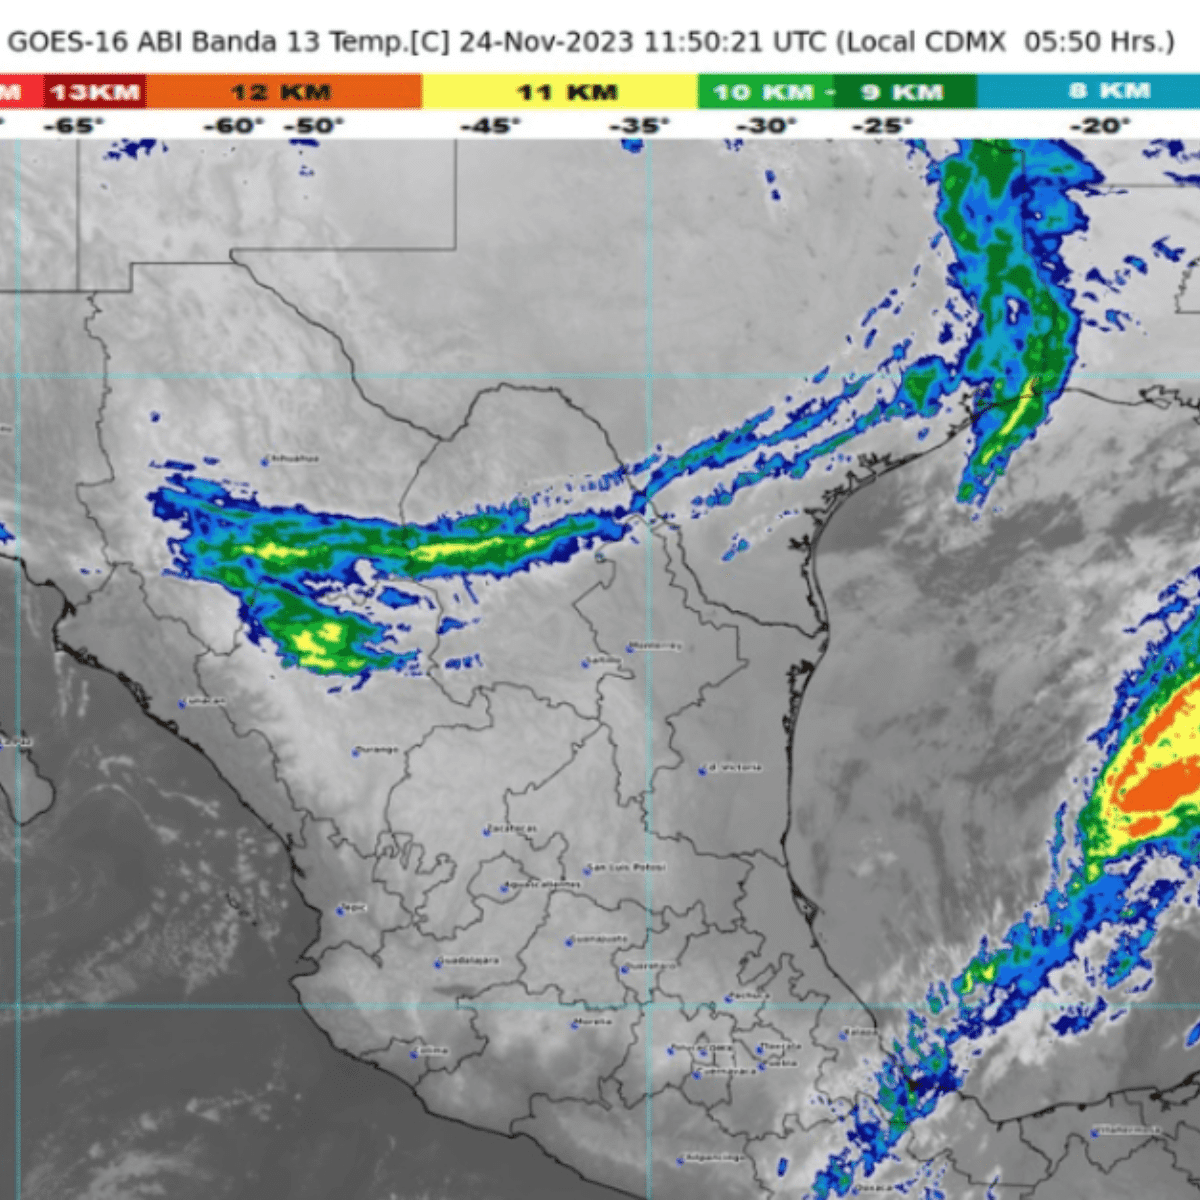 clima en méxico: se pronostican lluvias puntuales fuertes en chiapas y viento fuerte en el norte del país